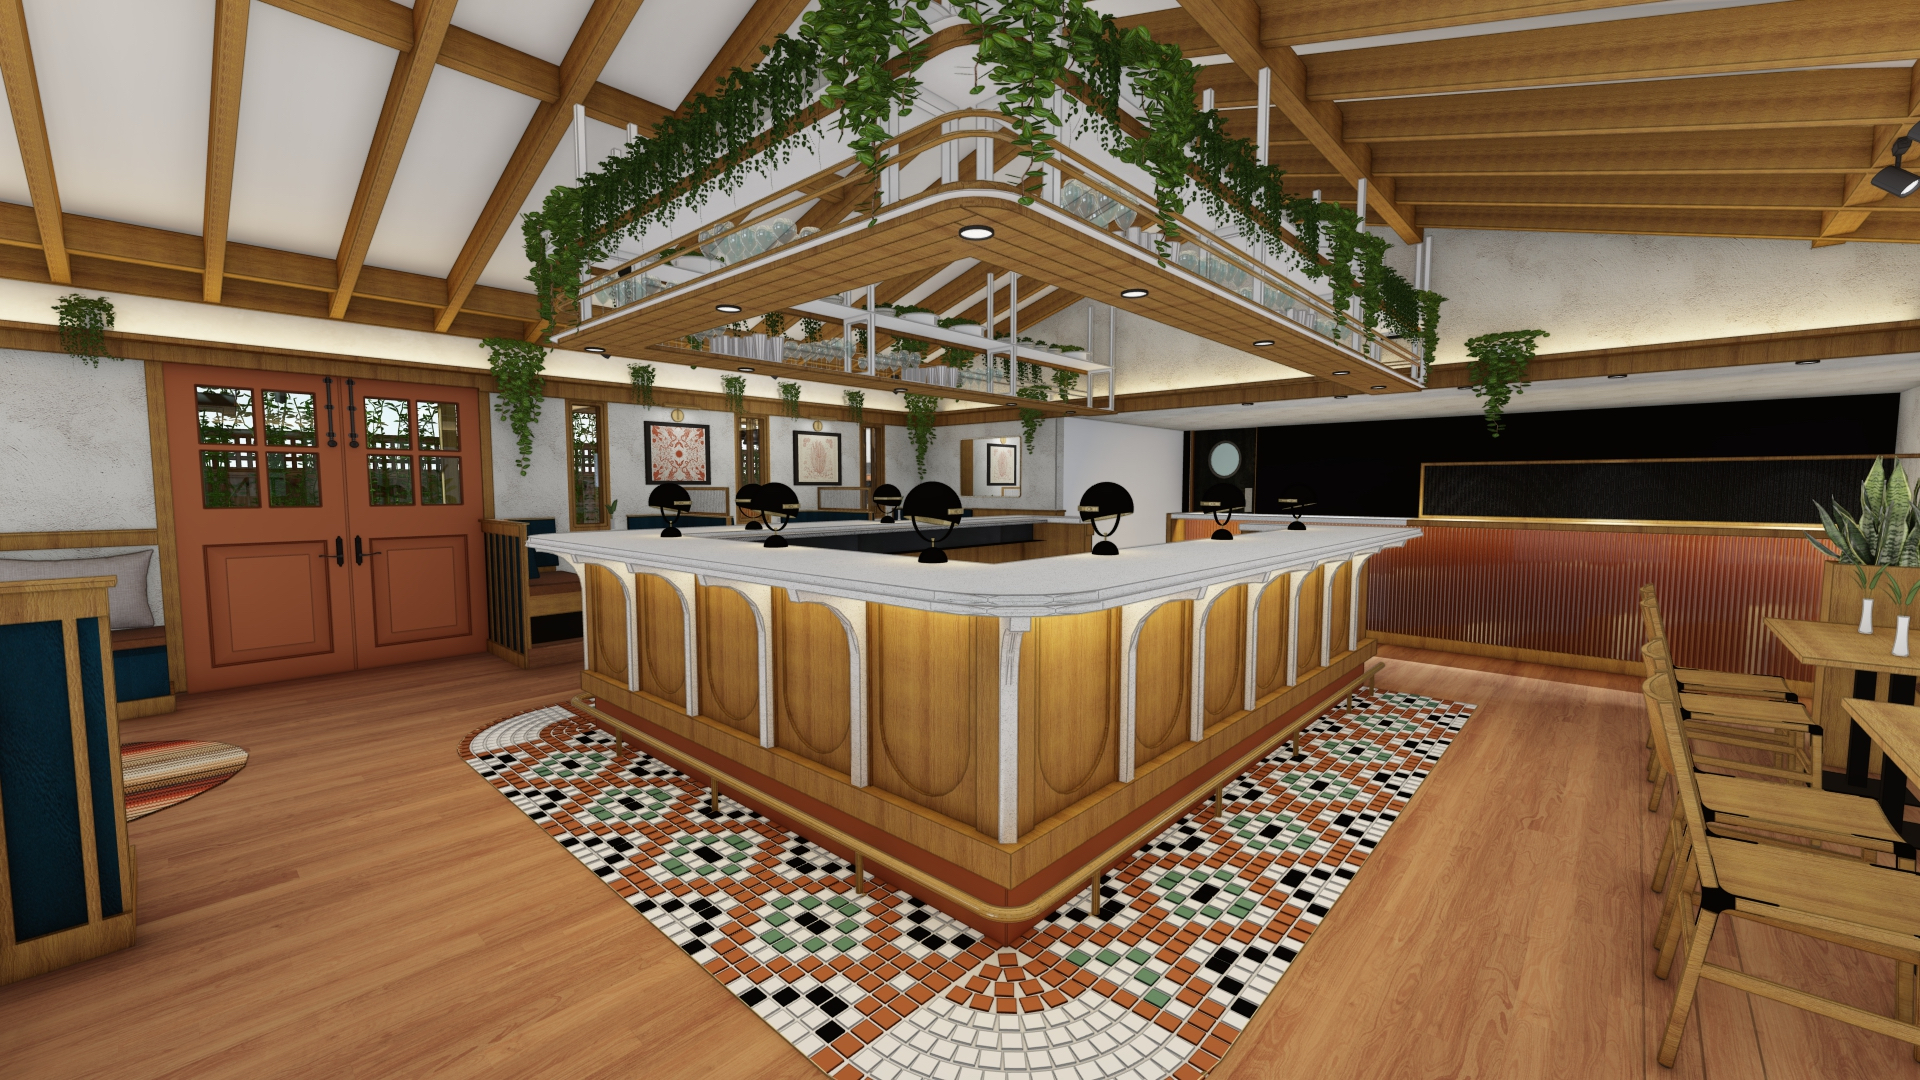 A rendering of a bar inside a restaurant.